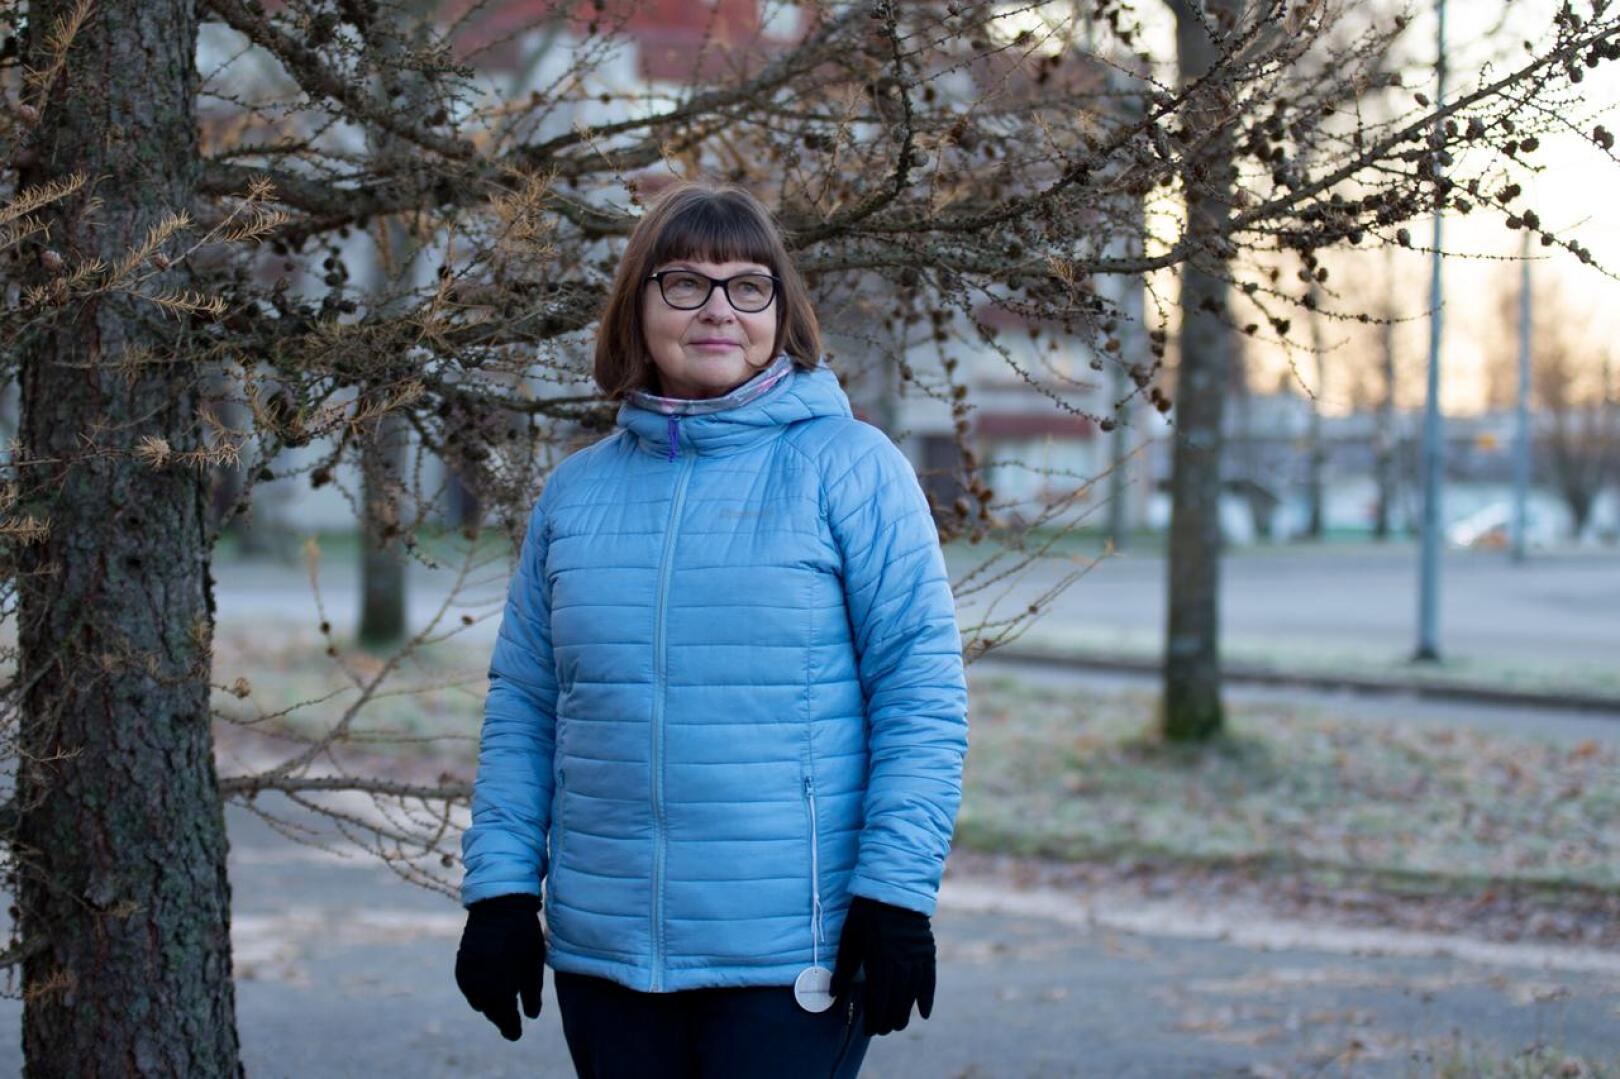 Keski-Pohjanmaan Maanpuolustusnaiset ry:n puheenjohtaja Helinä Jokitalo kertoo, että yhdistys perustettiin kaksi vuotta sitten ikään kuin tarpeesta, koska vastaavanlaista toimintaa erityisesti naisille ei Keski-Pohjanmaan alueella ollut.